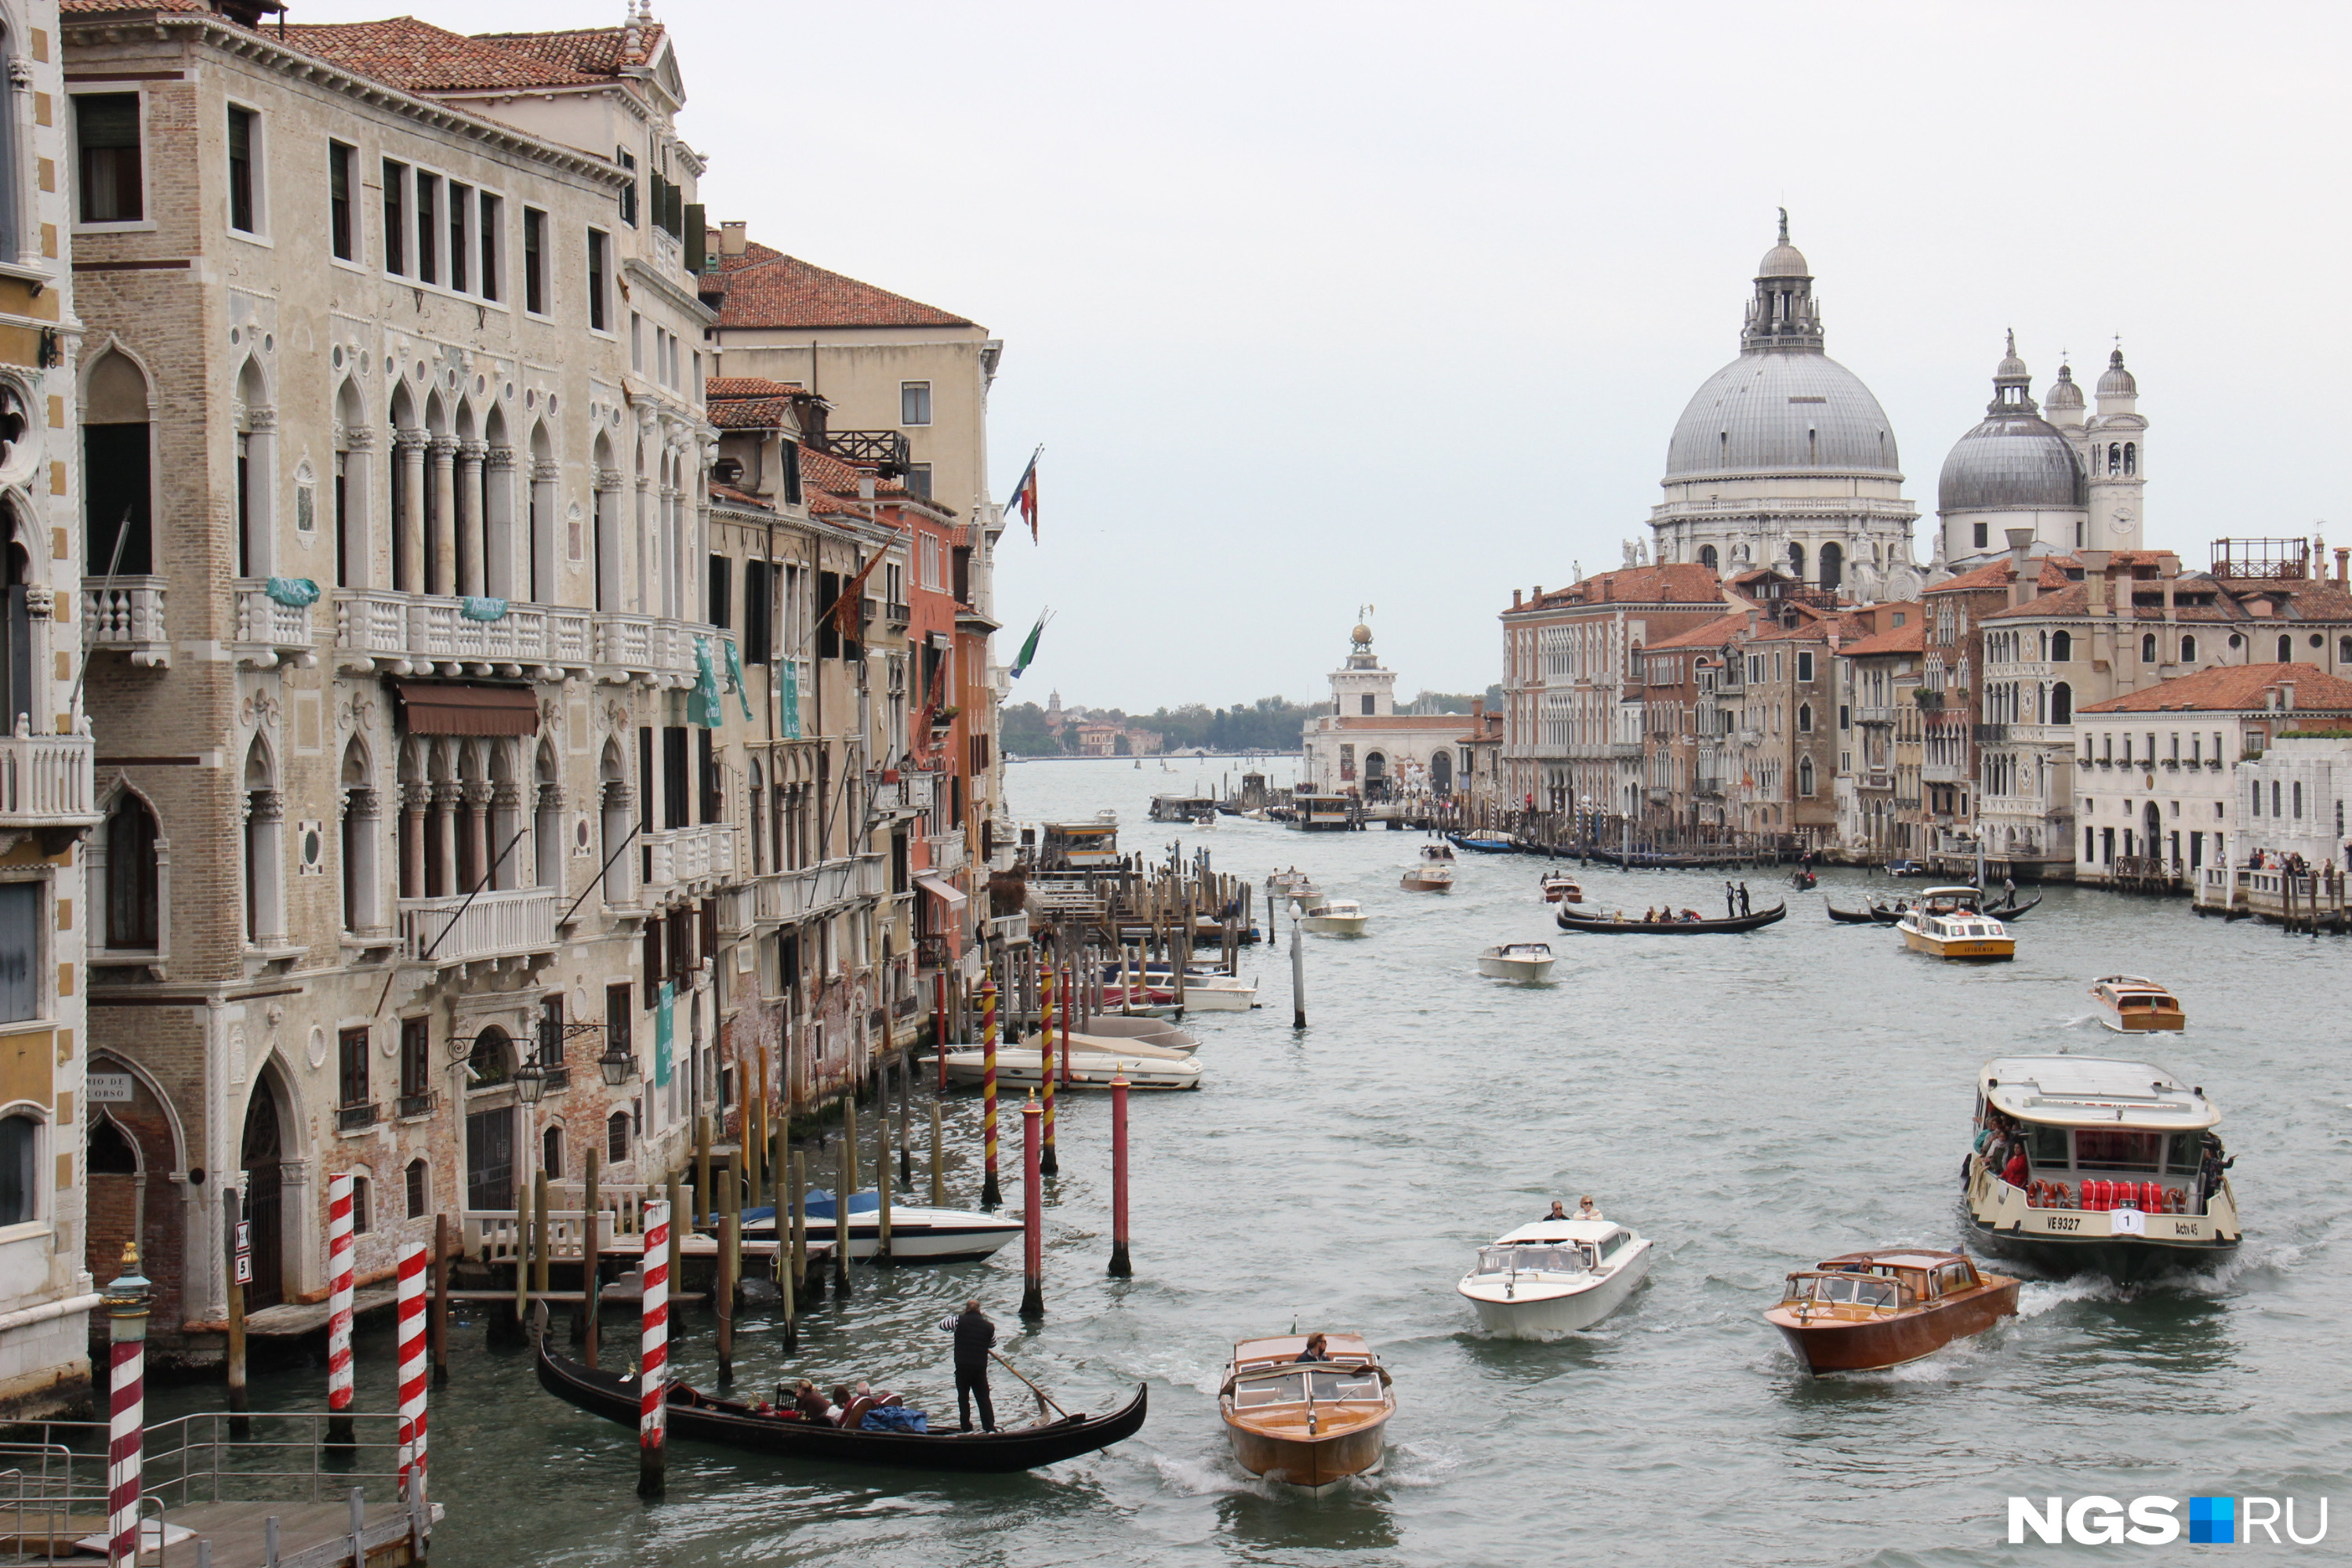 Венеция — один из самых дорогих городов Европы. Но расходы на жильё можно существенно сократить, если поселиться в соседних городках